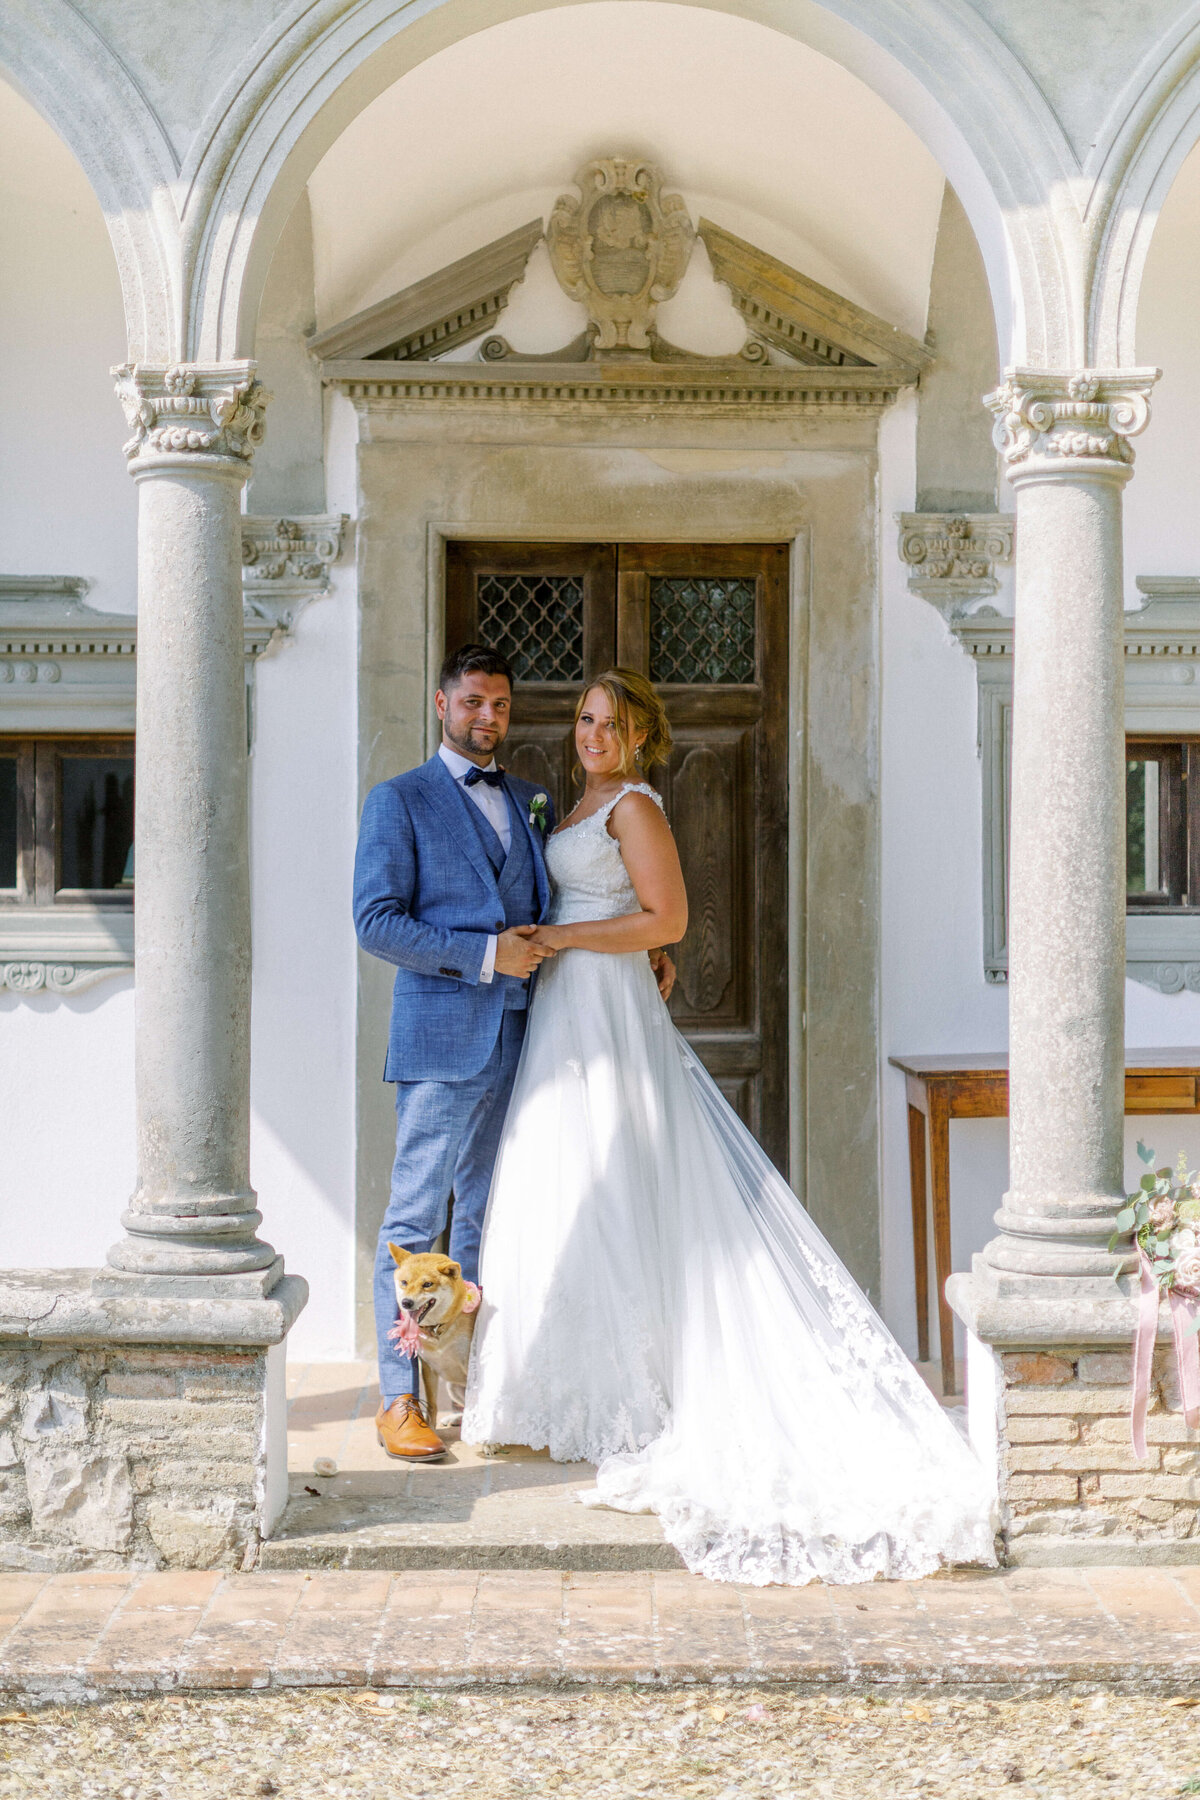 Wedding E&T - Tuscany - Italy 2019 23